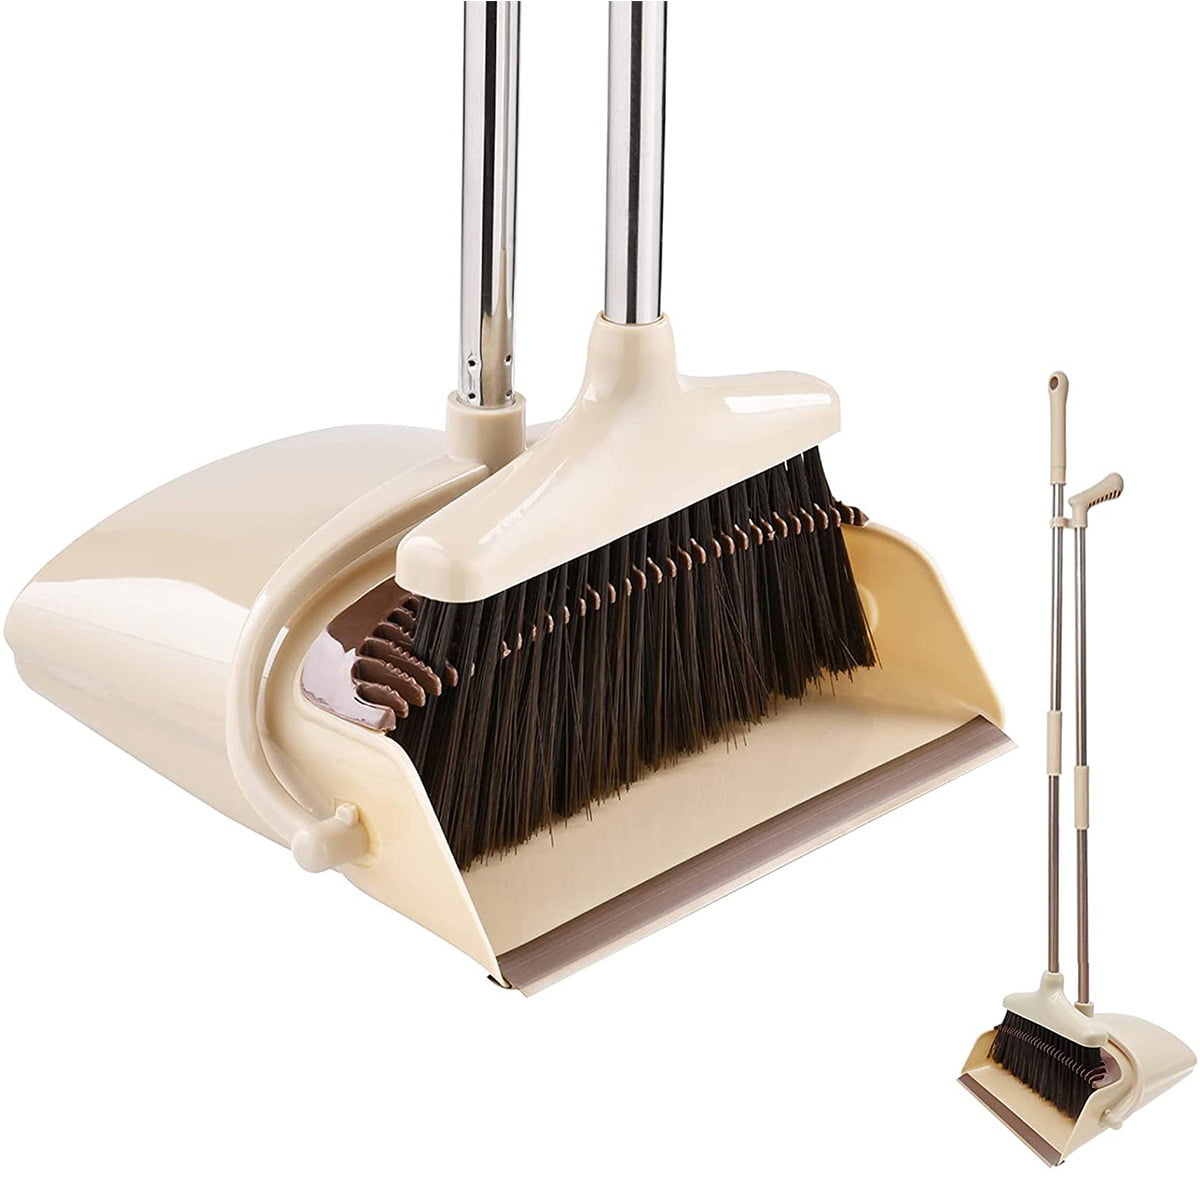 Household Sweeping Cleaning Dustpan Brush Set Lobby Dust Pan Broom Long Handle 